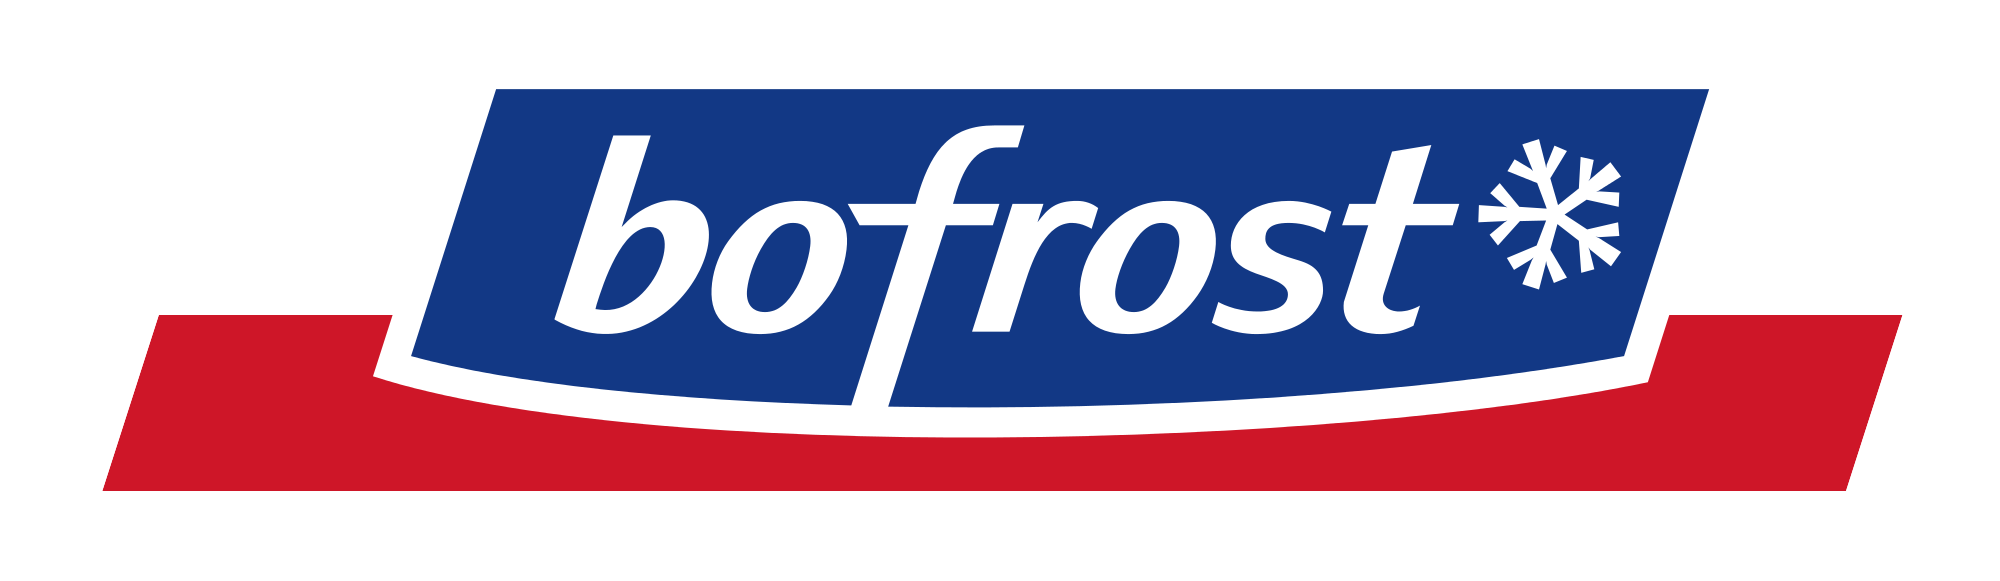 Bofrost promotie : Overzicht (weekacties) en promos Bofrost